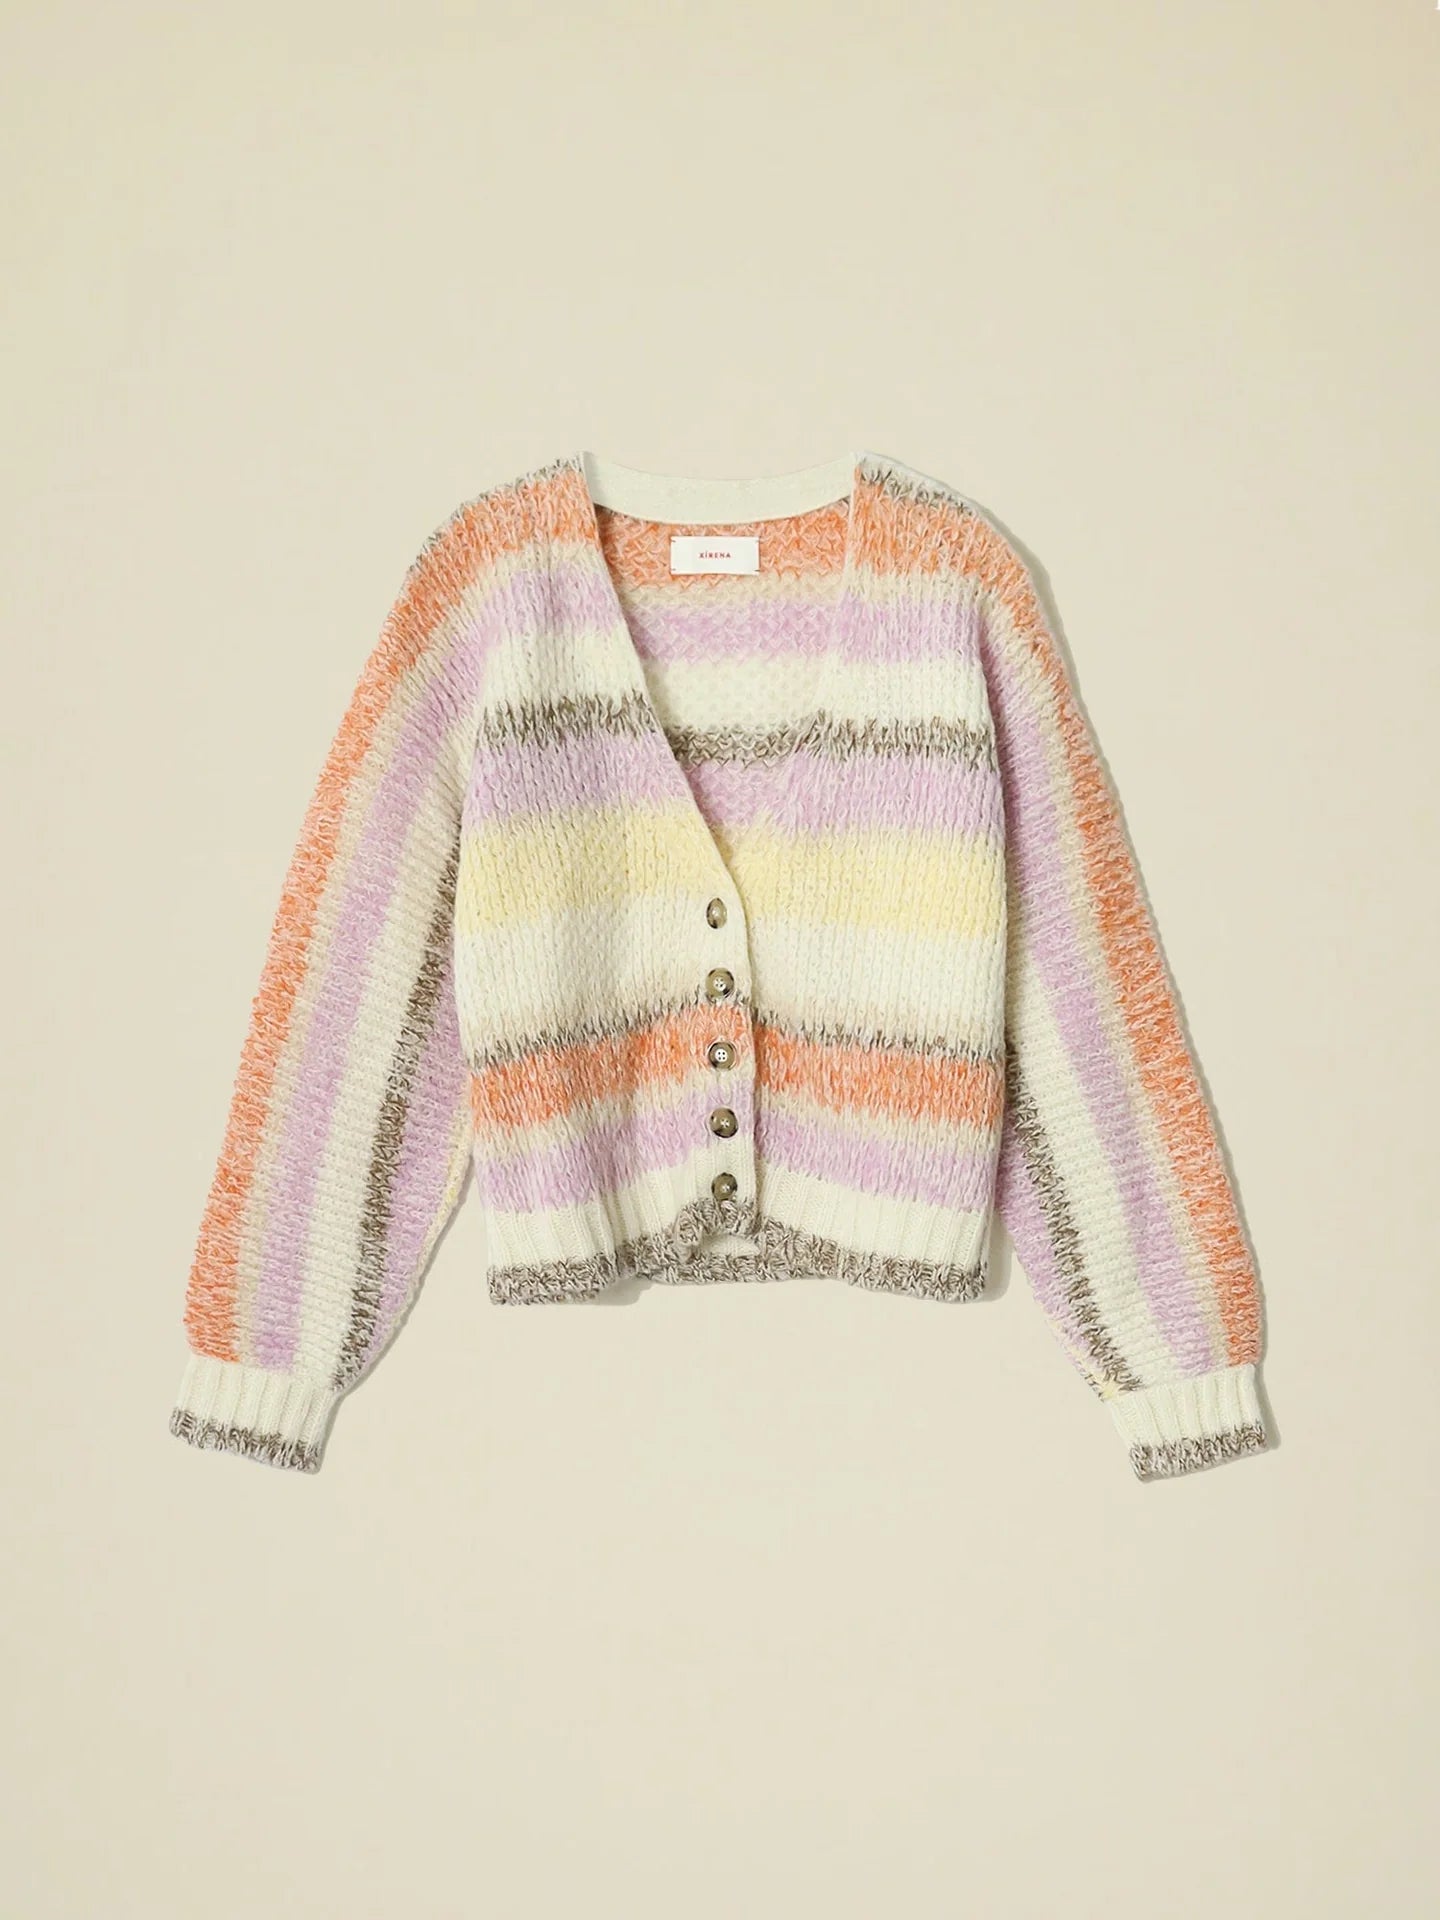 Laramie Sweater in Cream Sunrise